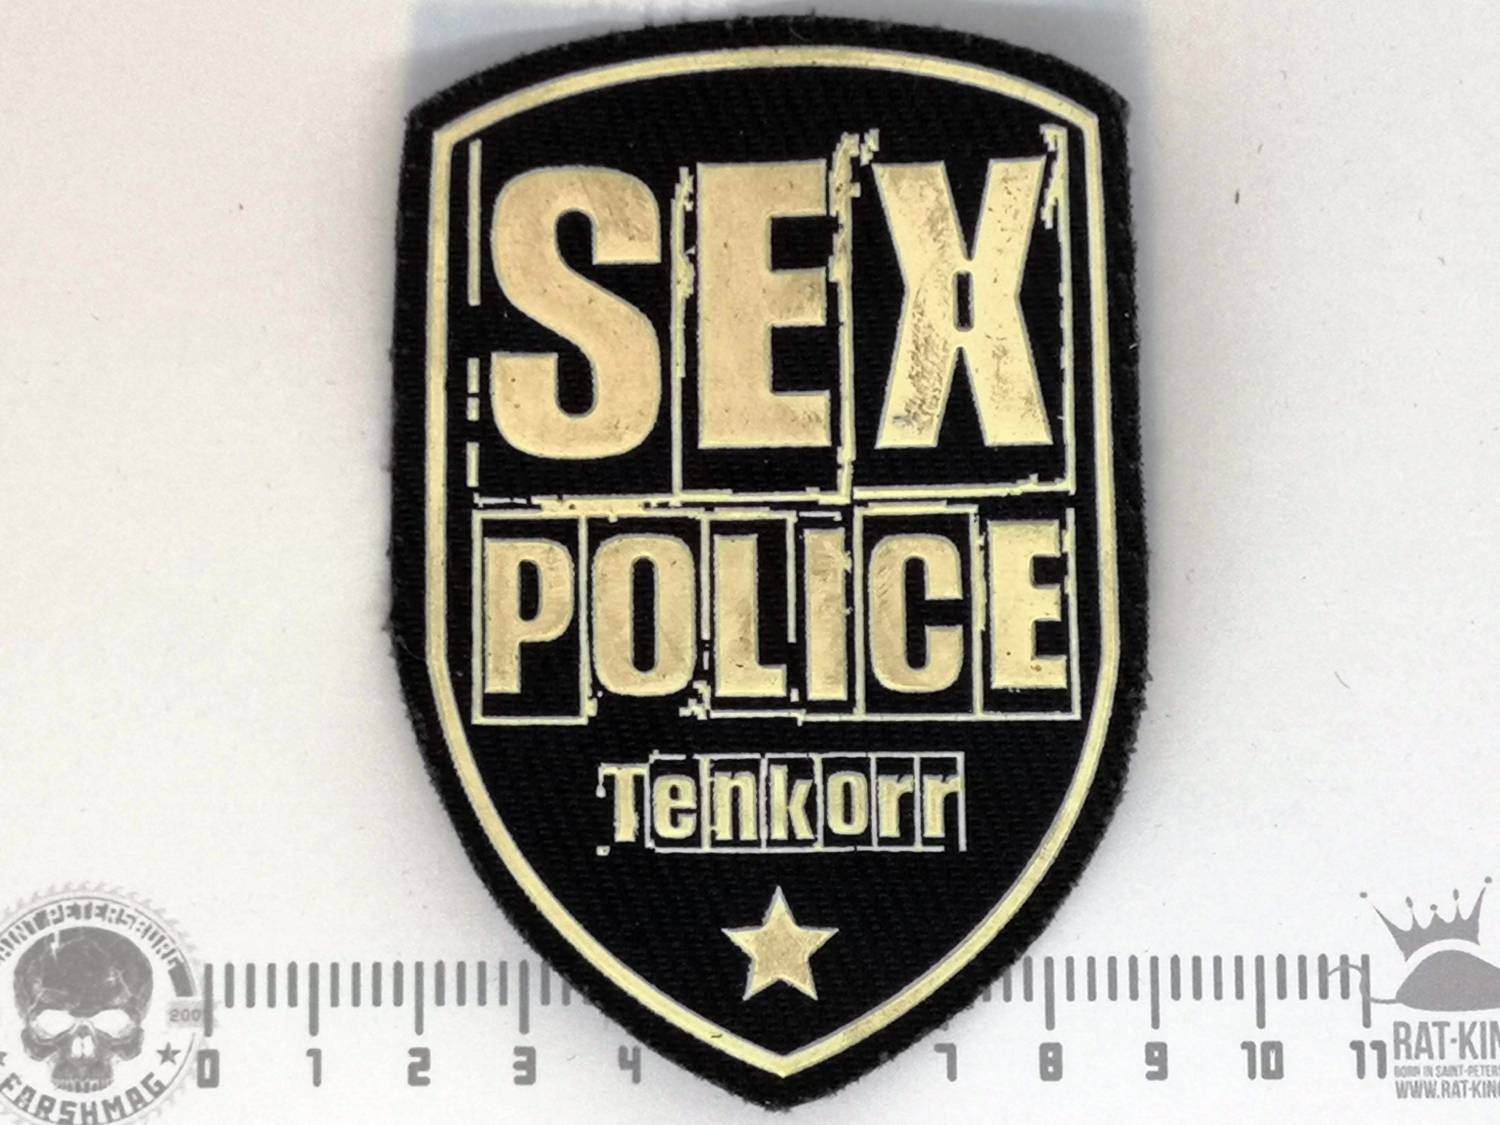 Tenkorr Sex Police